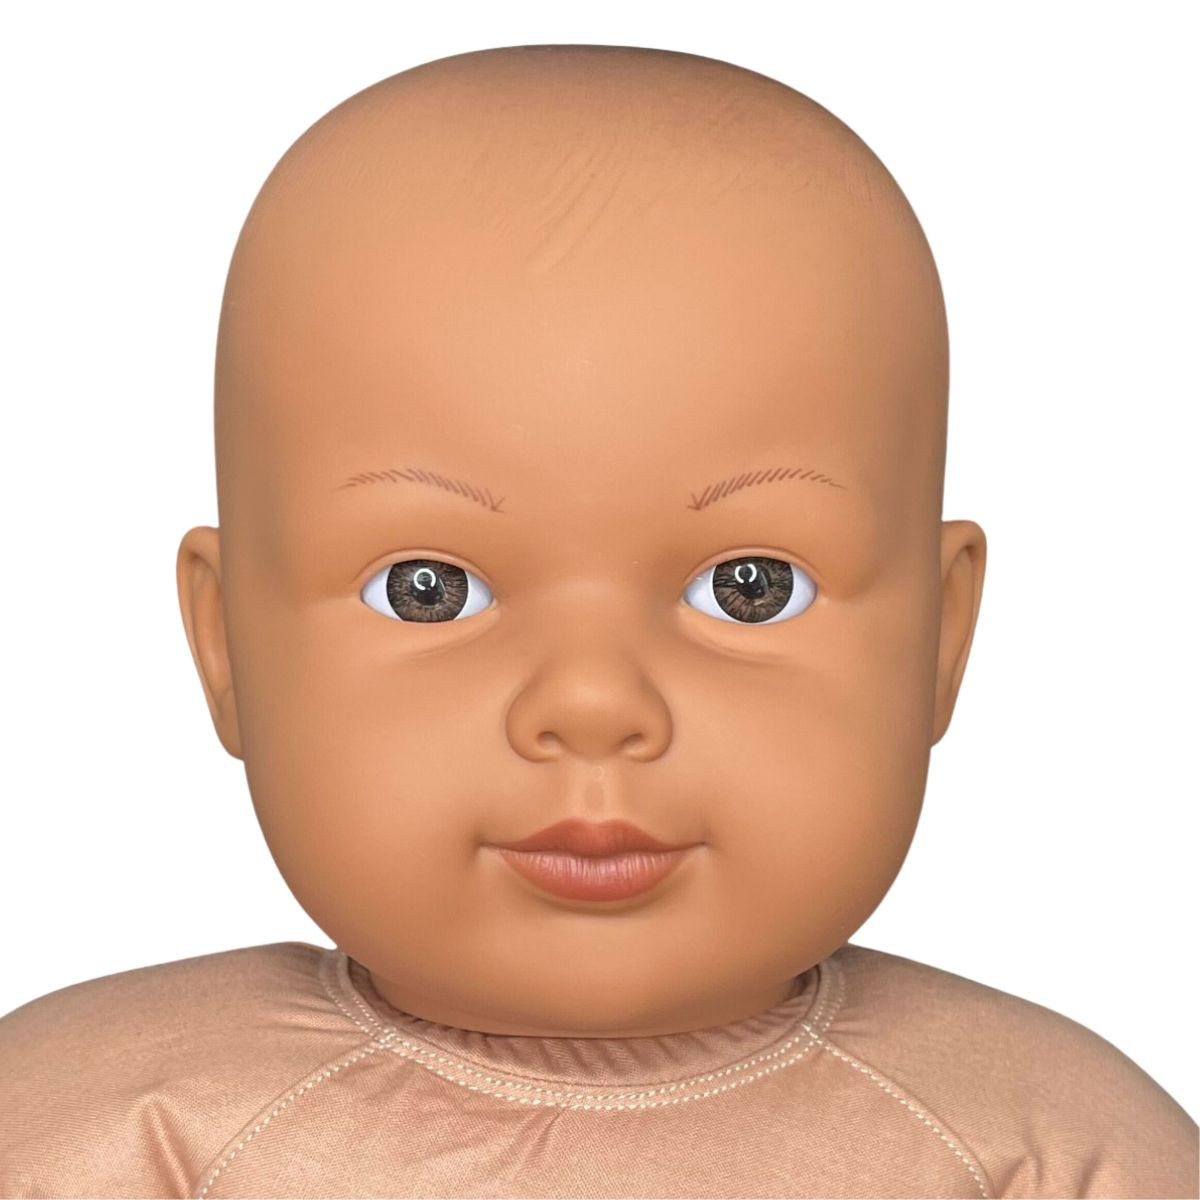 Bébé 3-4 mois 60cm 4,2kg - Poupon de Portage Lesté TNW Asiatique